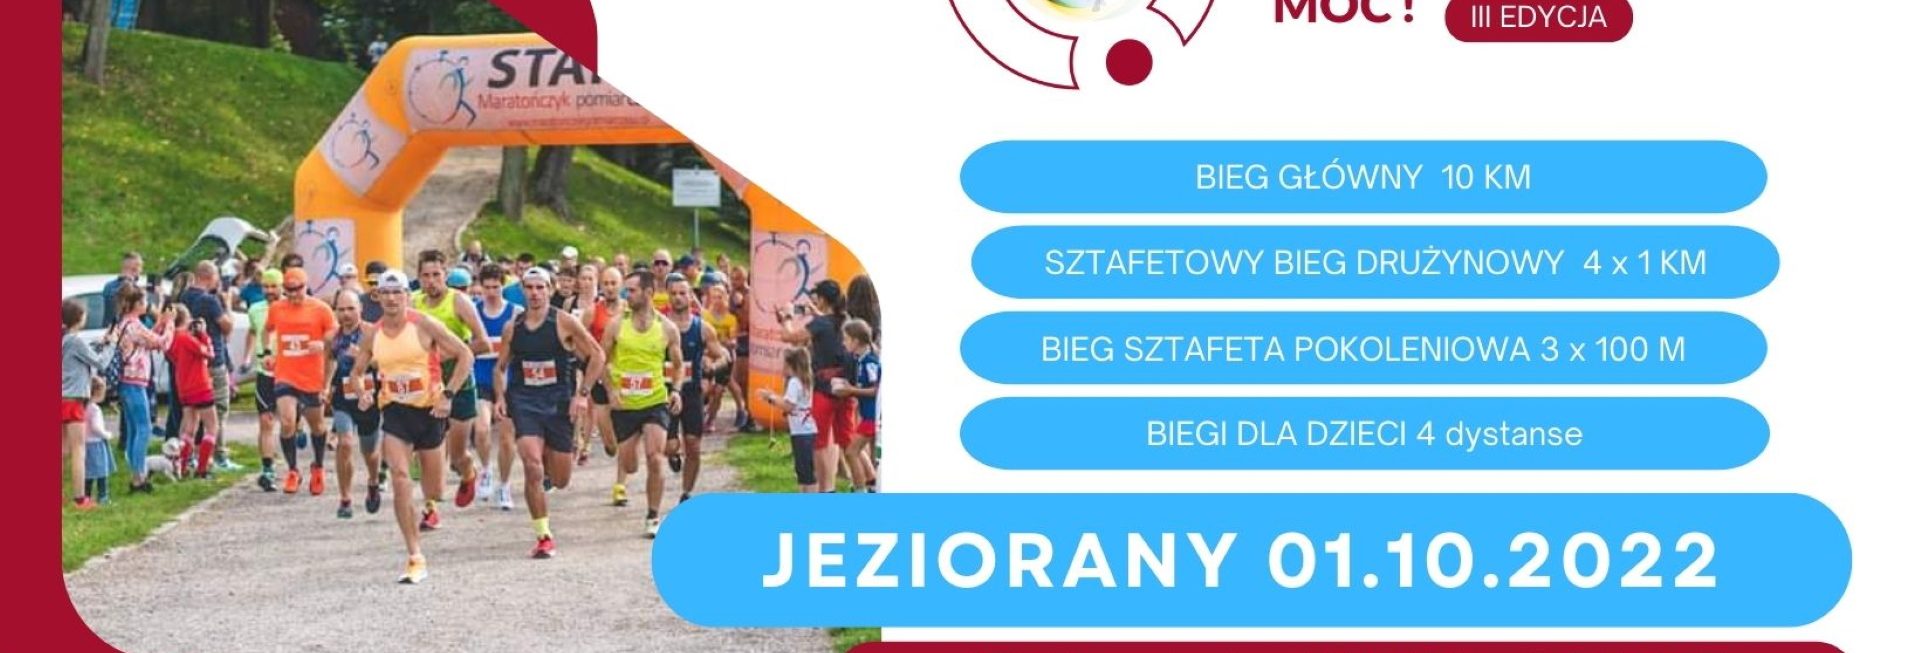 Plakat zapraszający do Jezioran na Bieg "Wykuwamy biegową moc!" Jeziorany 2022.